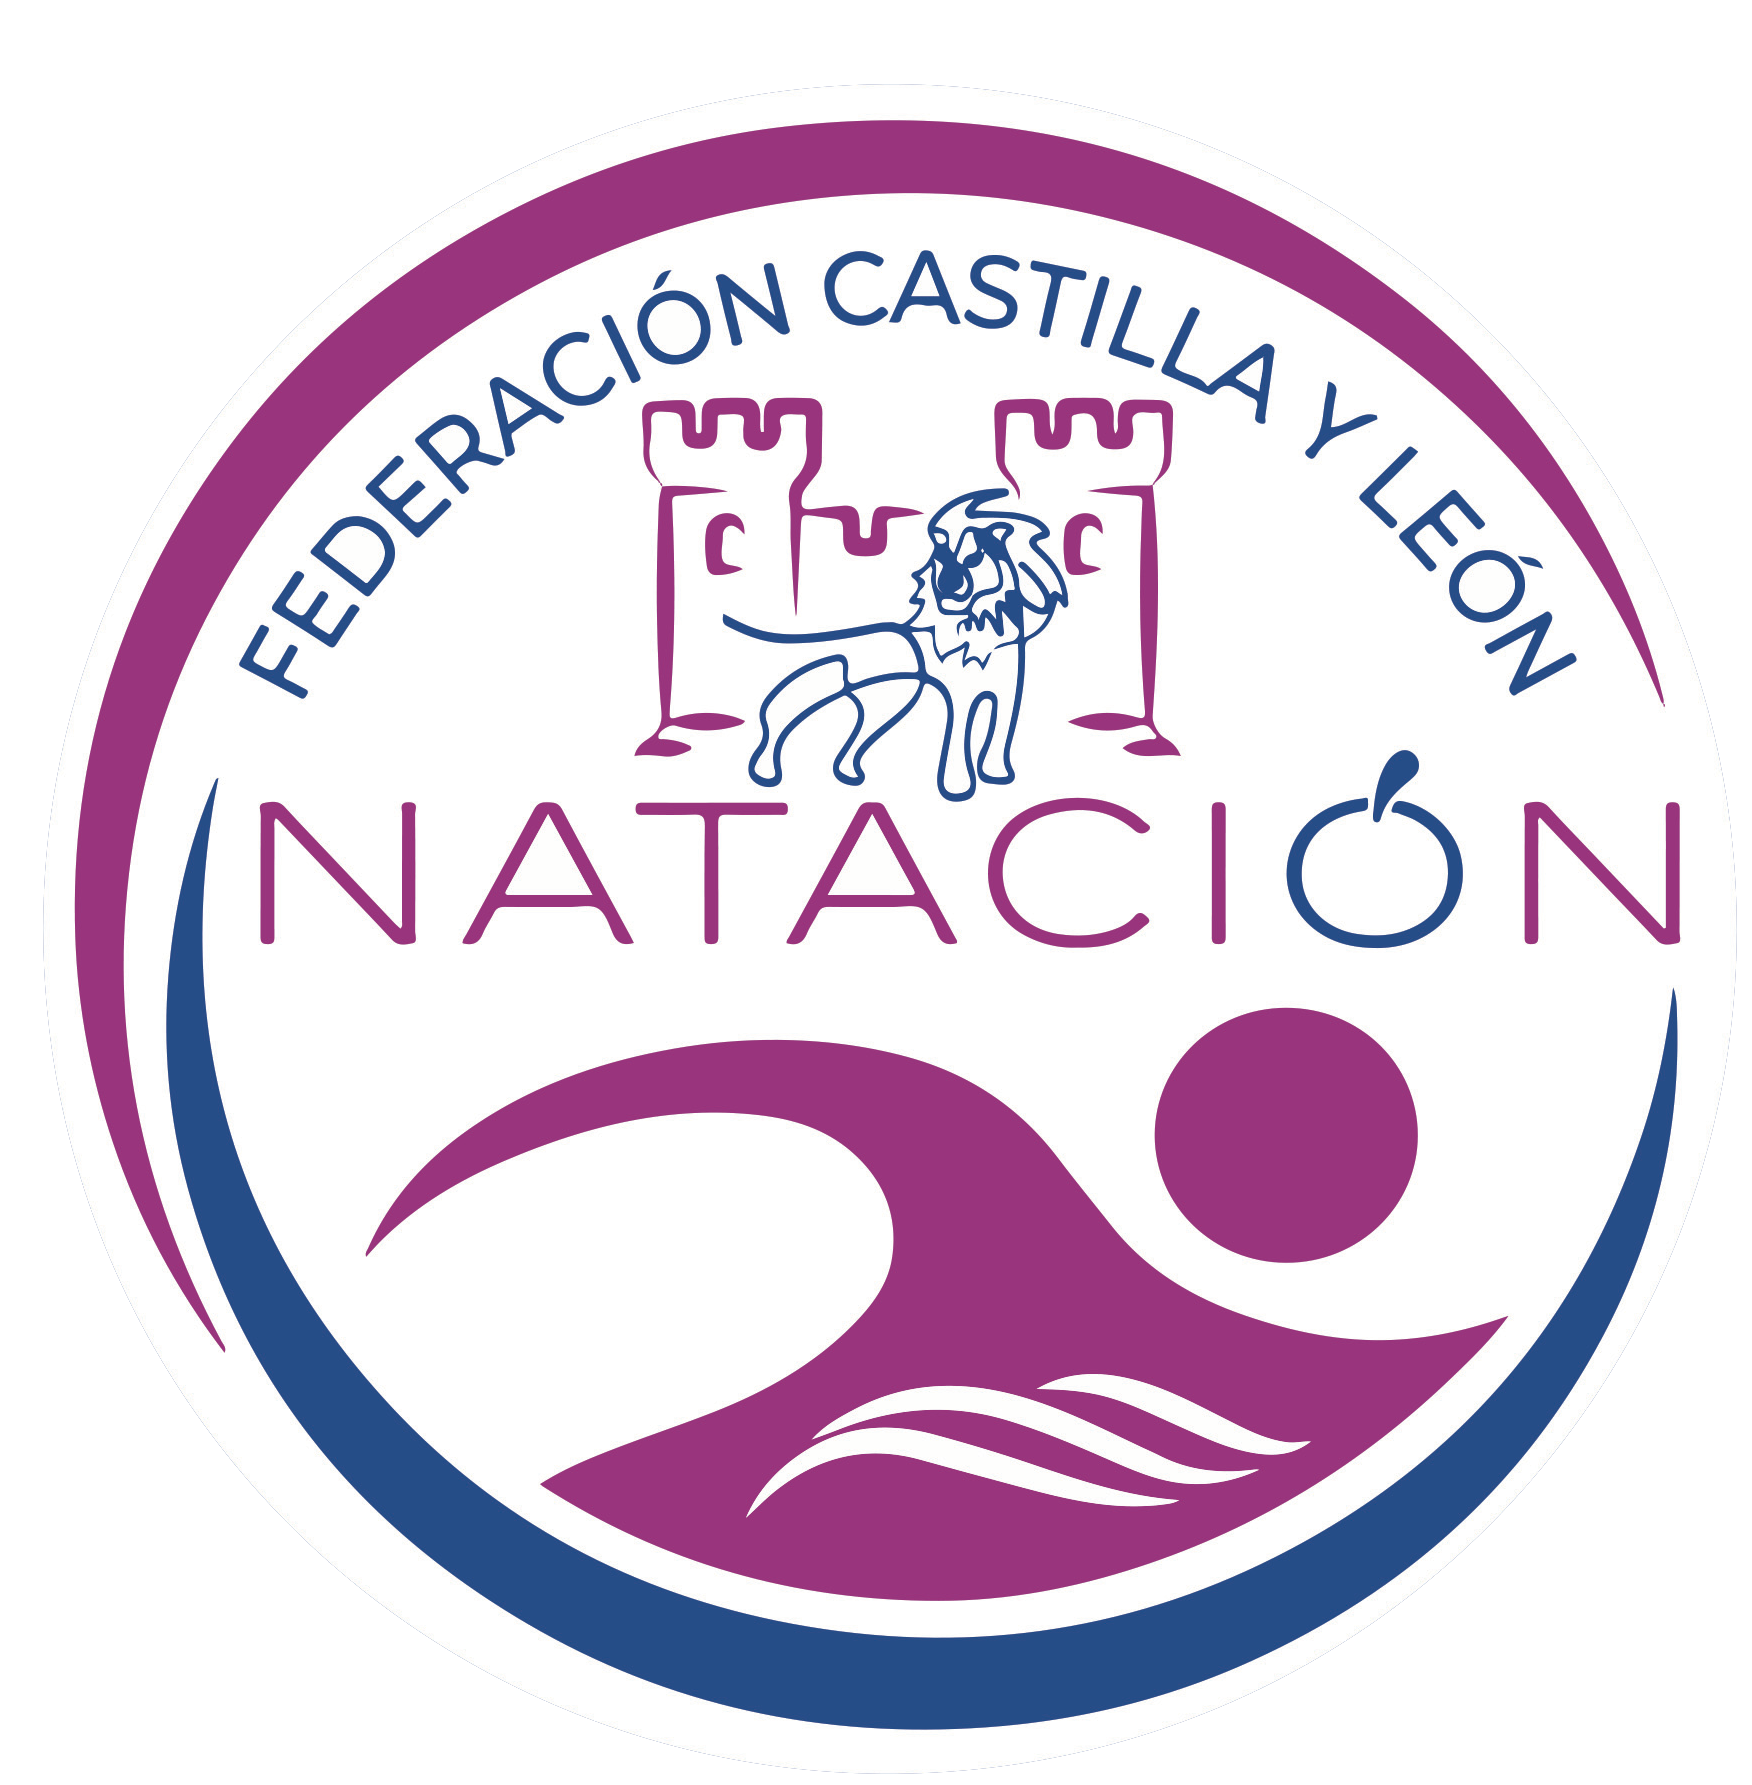 Federación Castilla y León Natación